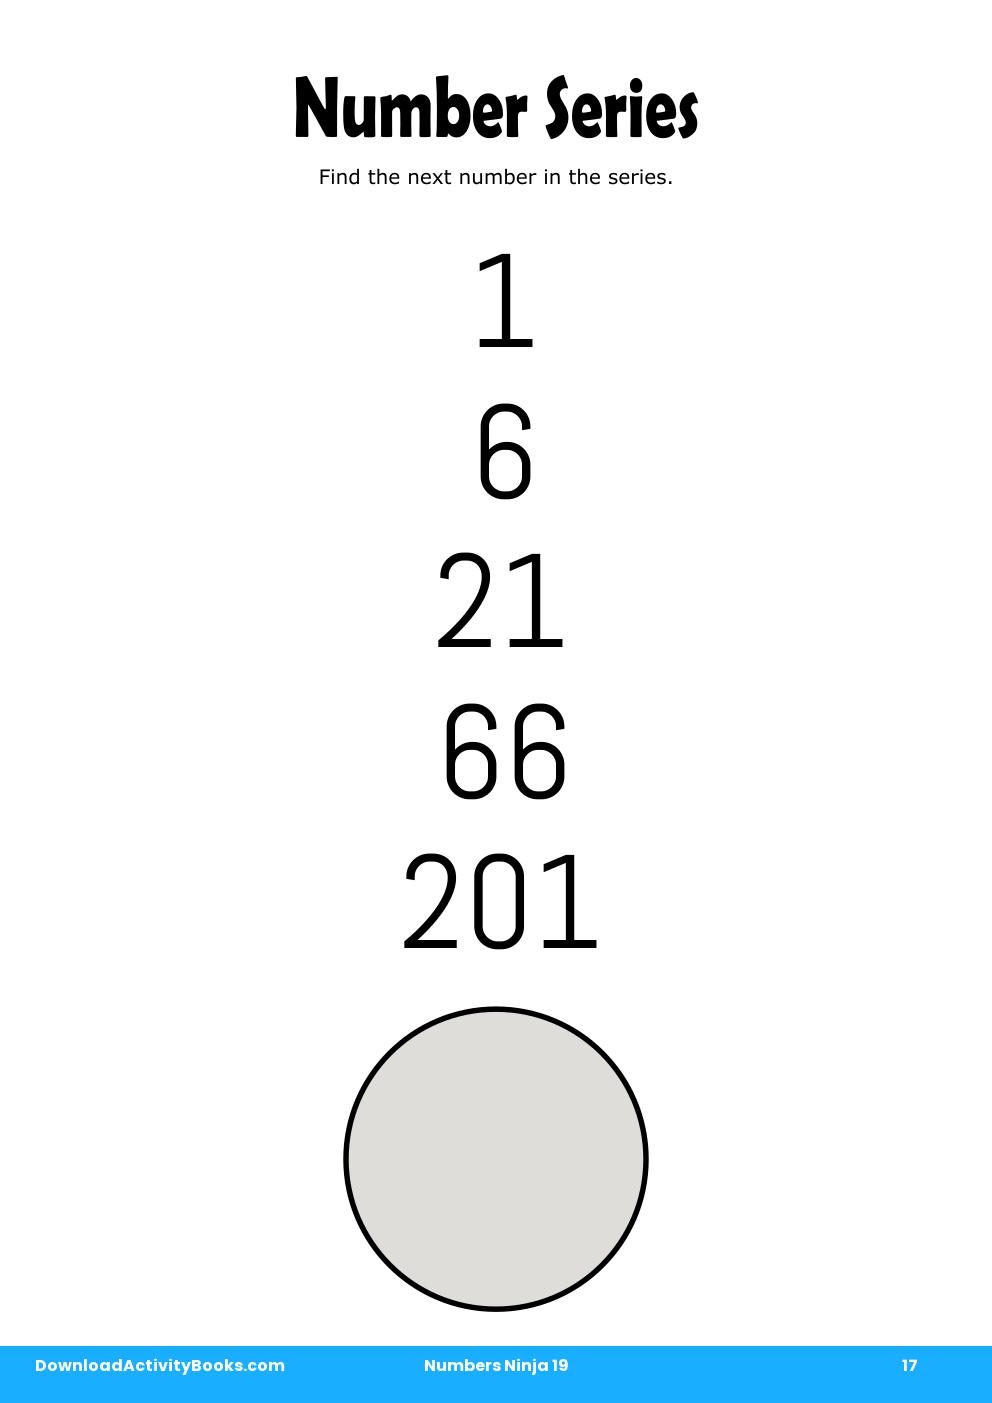 Number Series in Numbers Ninja 19